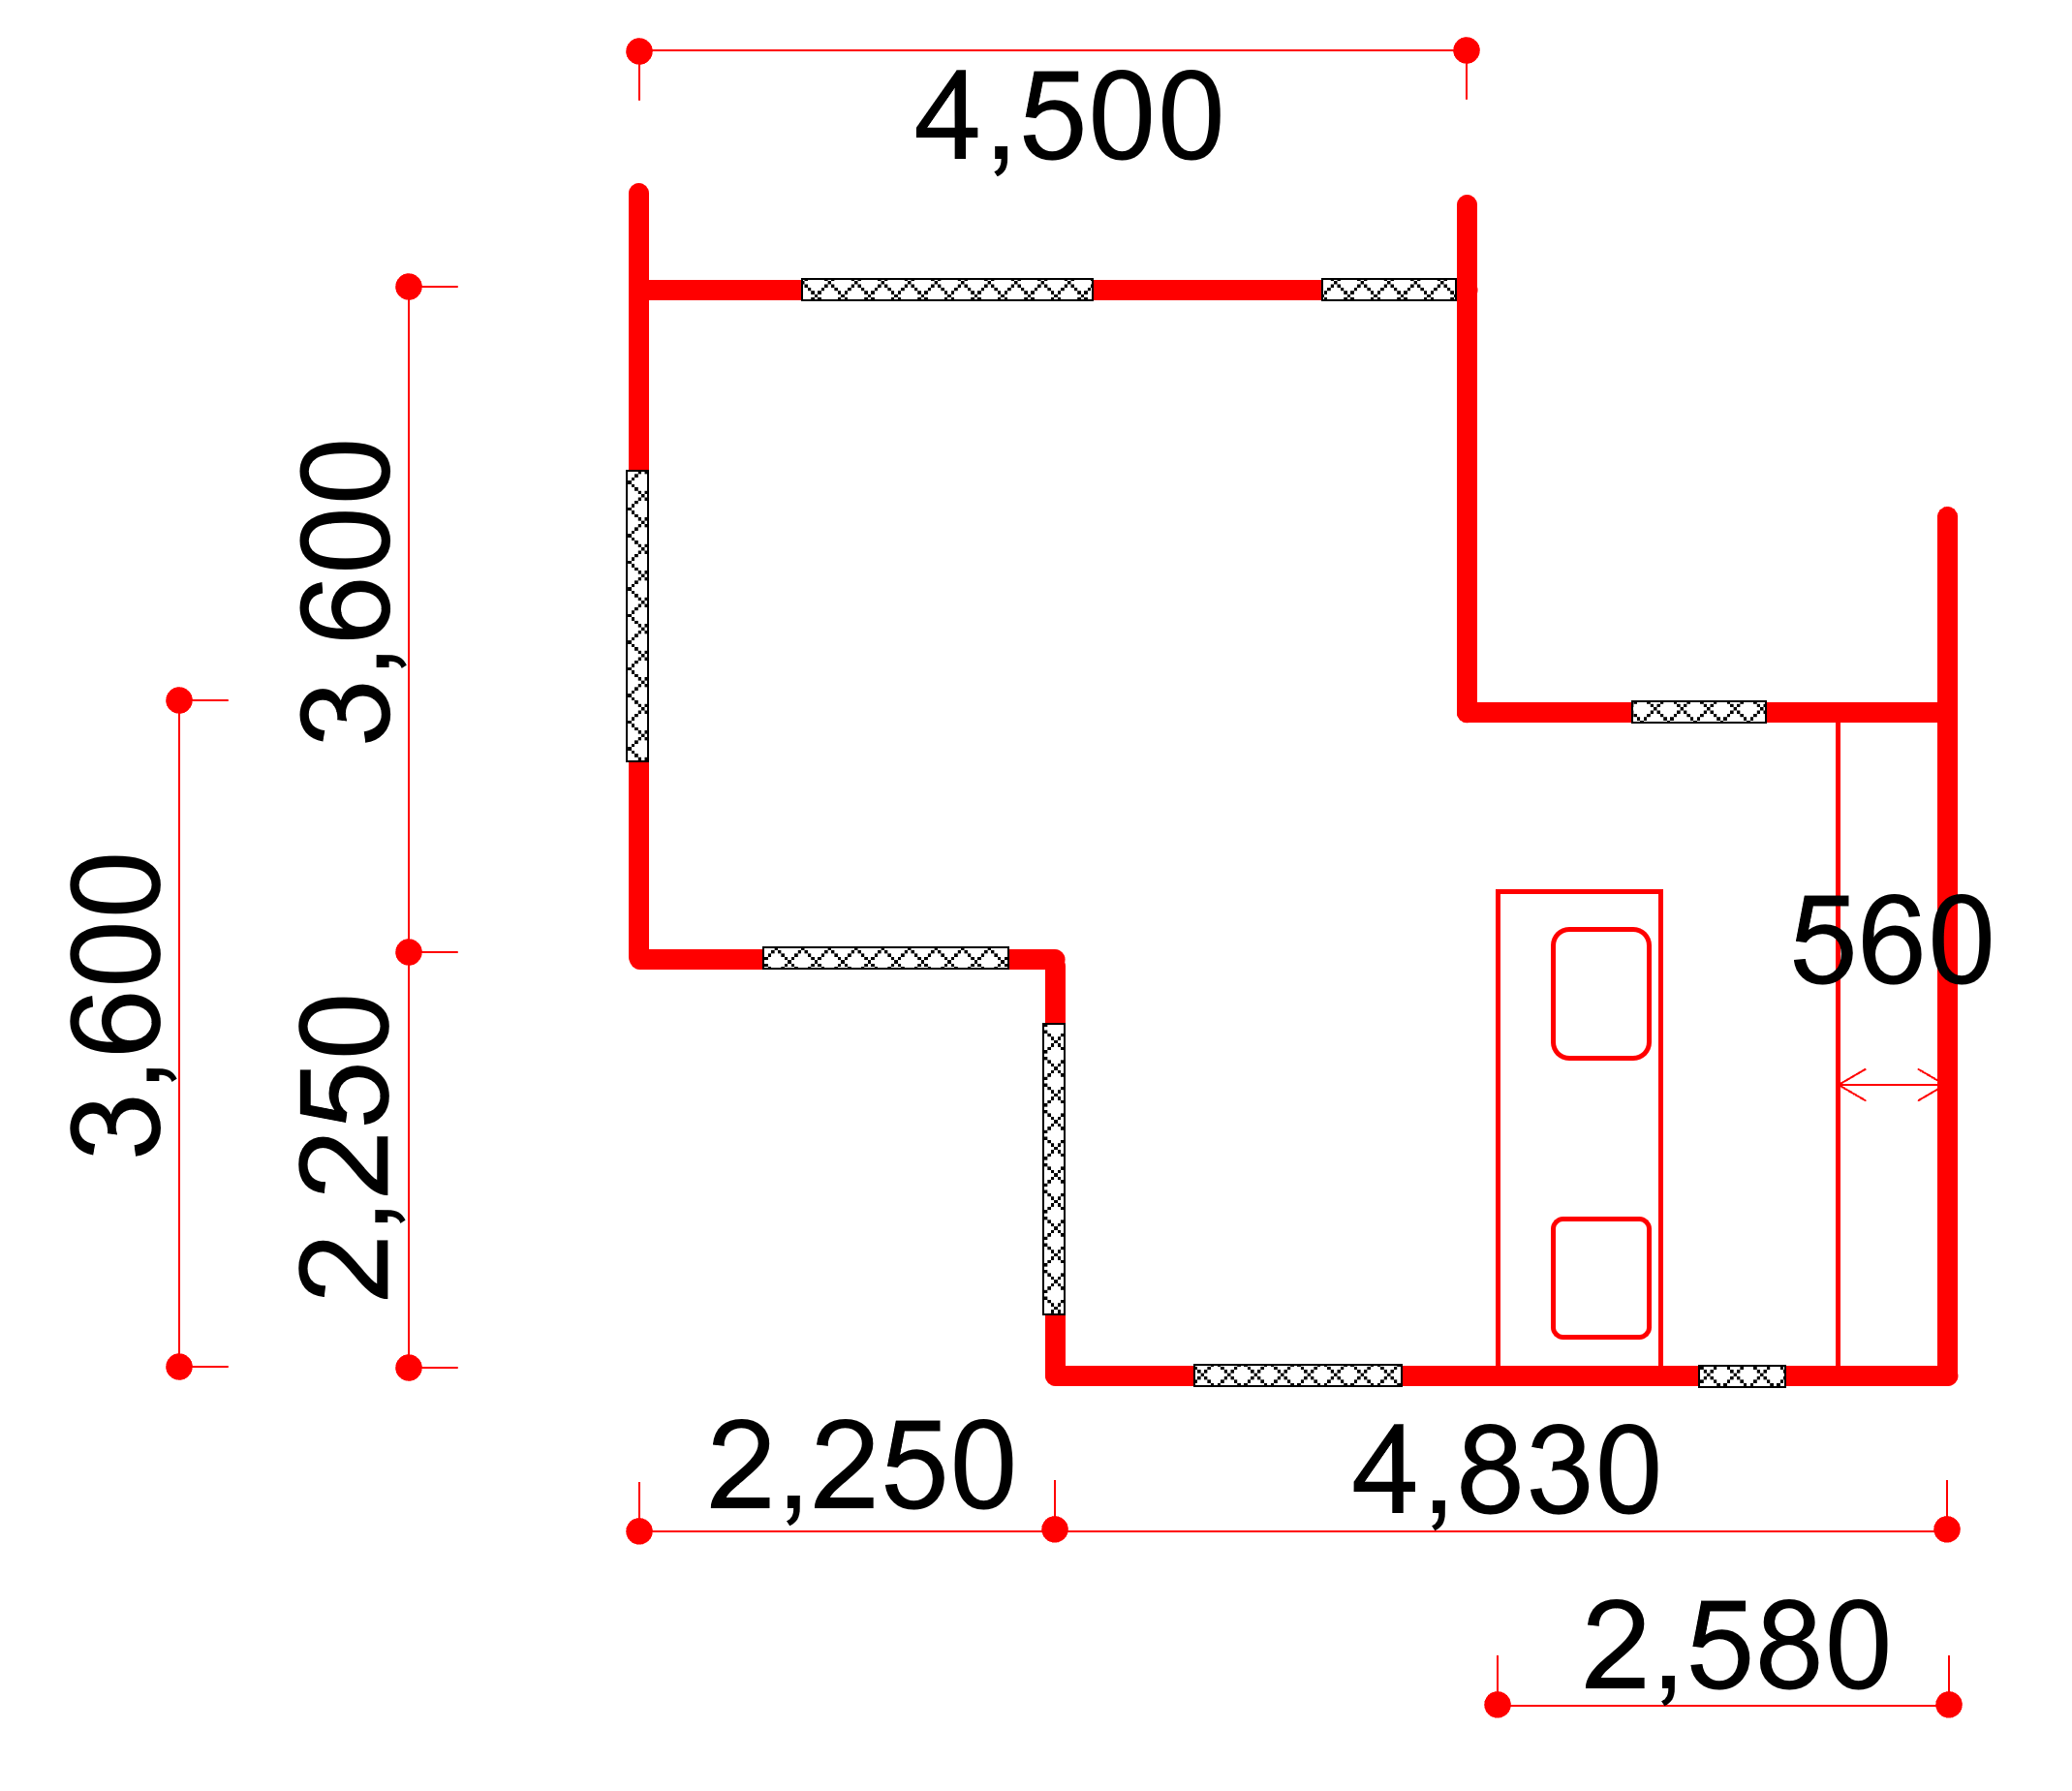 トレースした間取り図（単位はmm）。窓やドアは網掛け（今回のシミュレーションでは全て閉じた条件を考慮するため実質的には壁）。